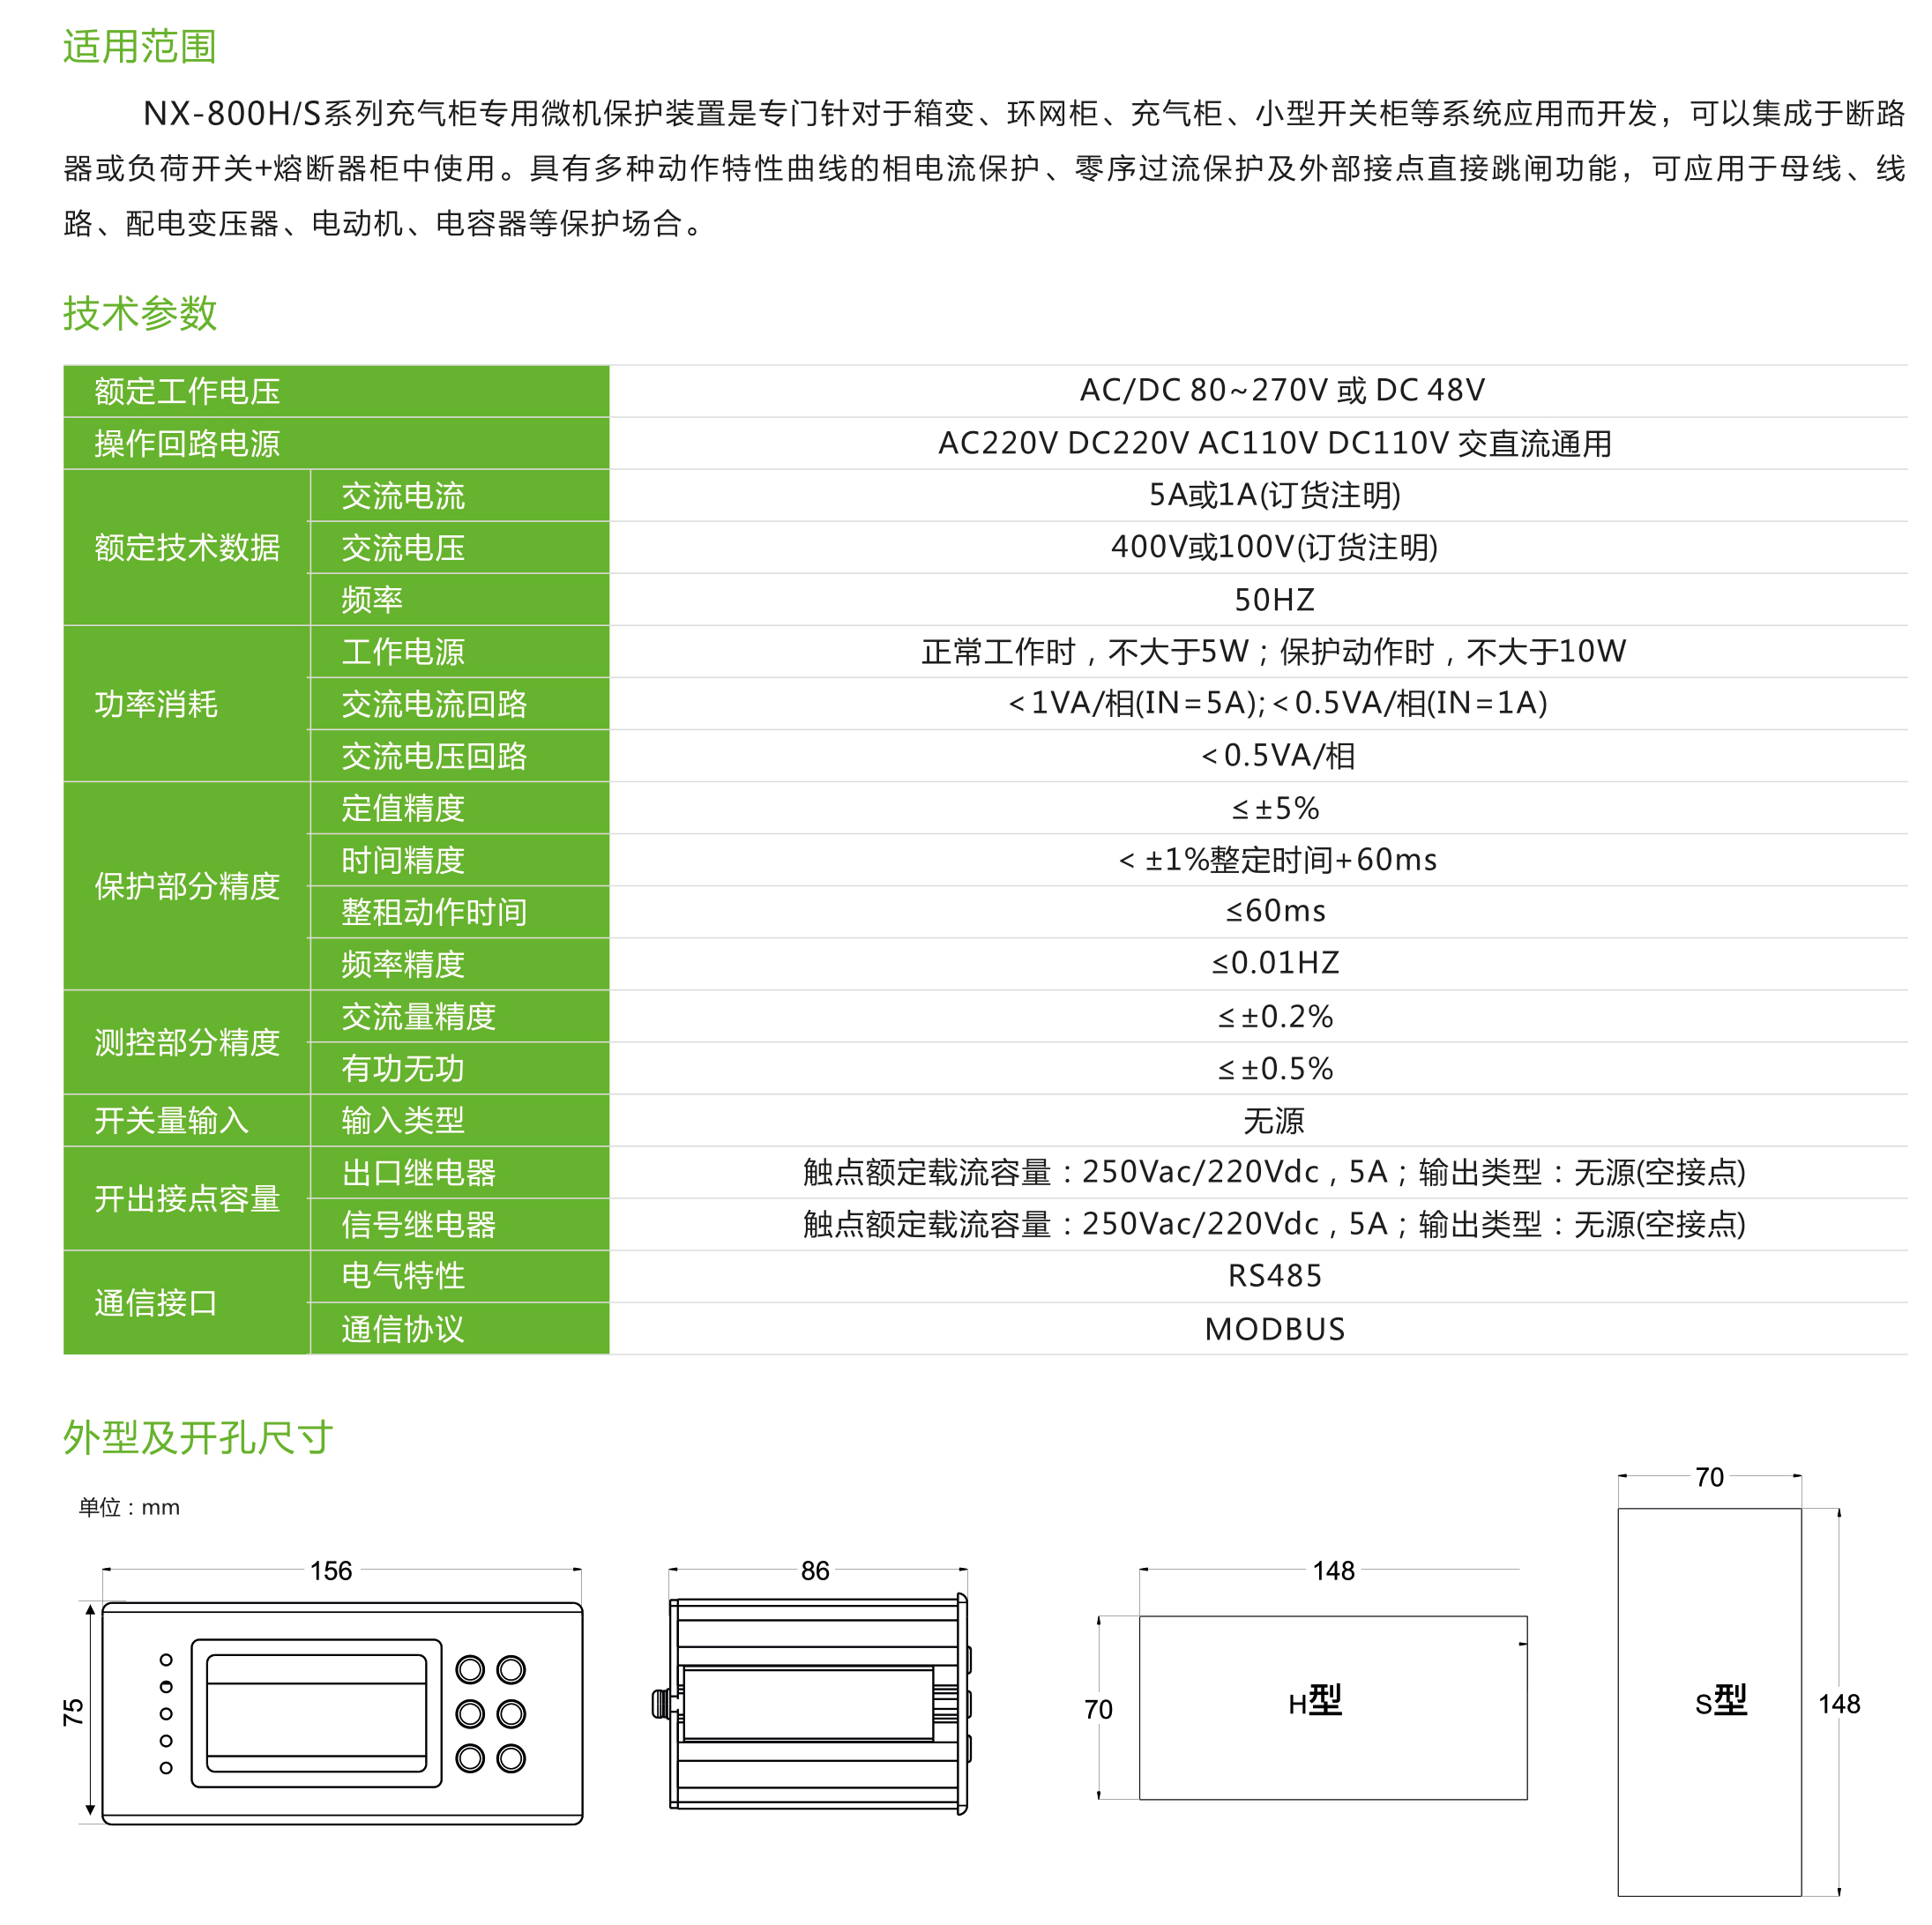 NX-800H/S系列充气柜专用微机保护装置